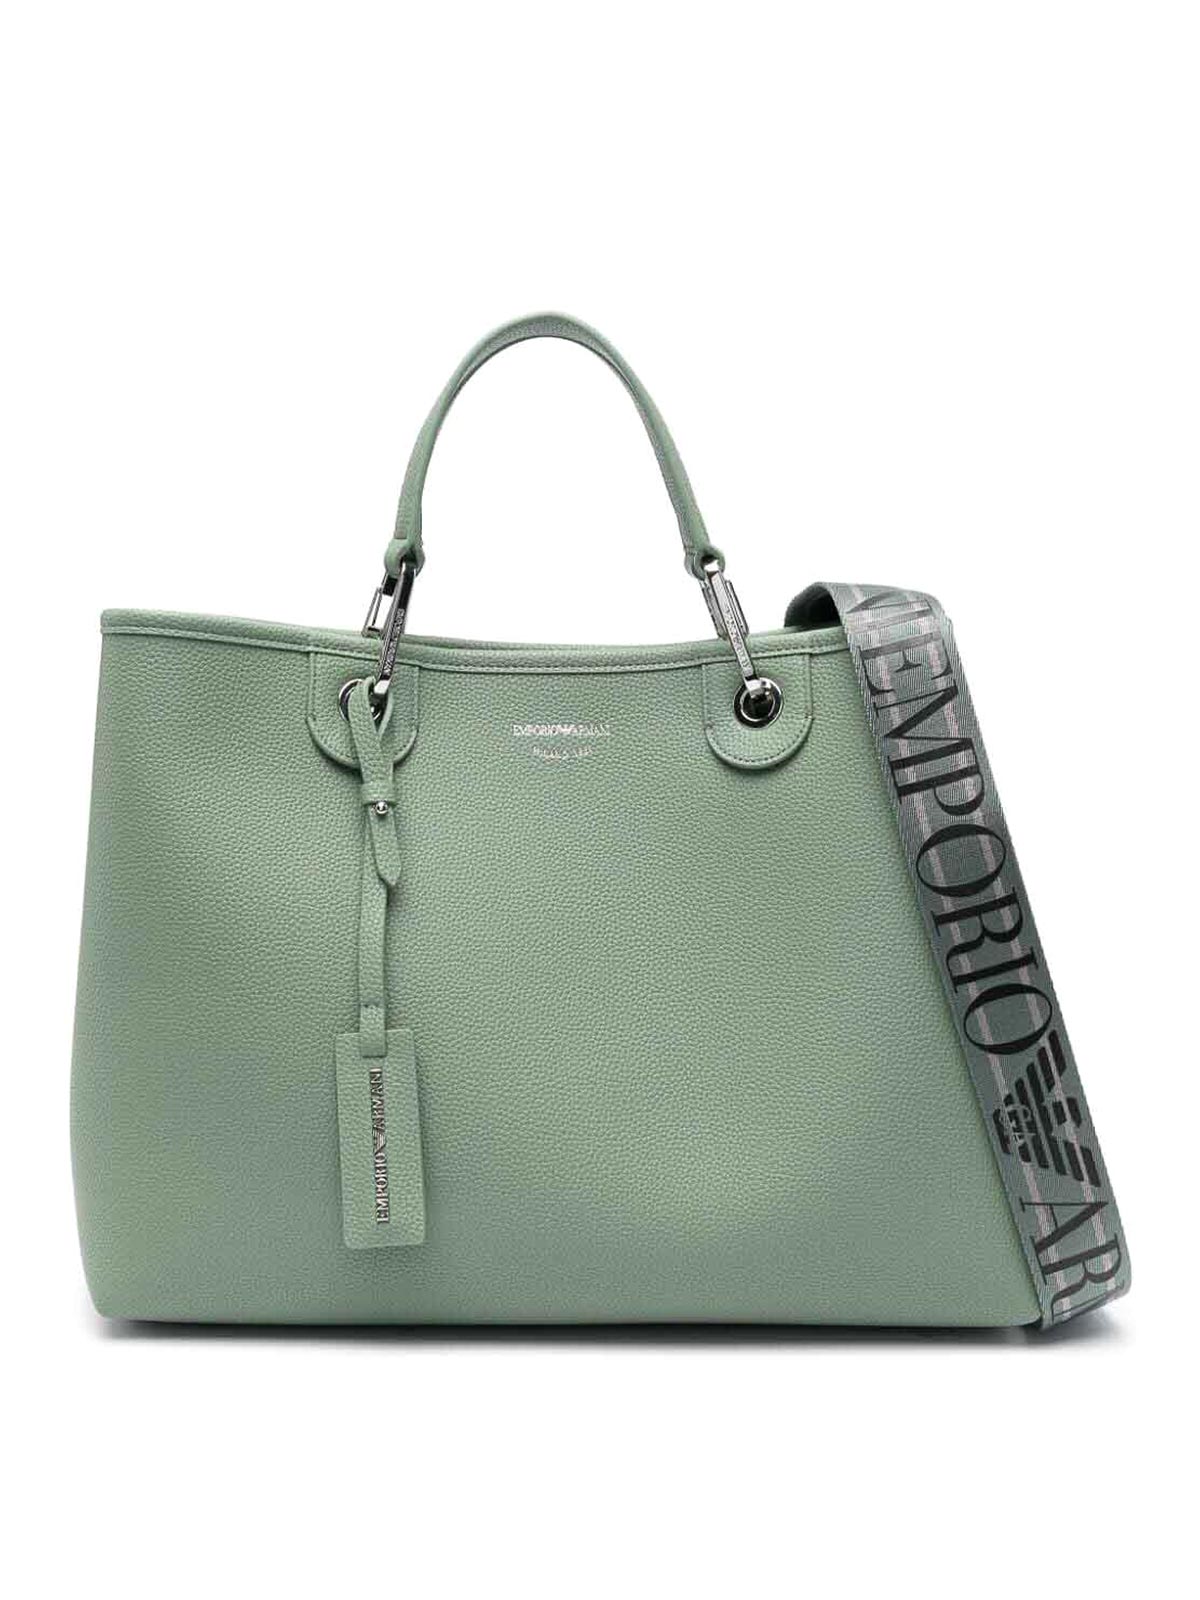 Shop Emporio Armani Shopping Bag In Green